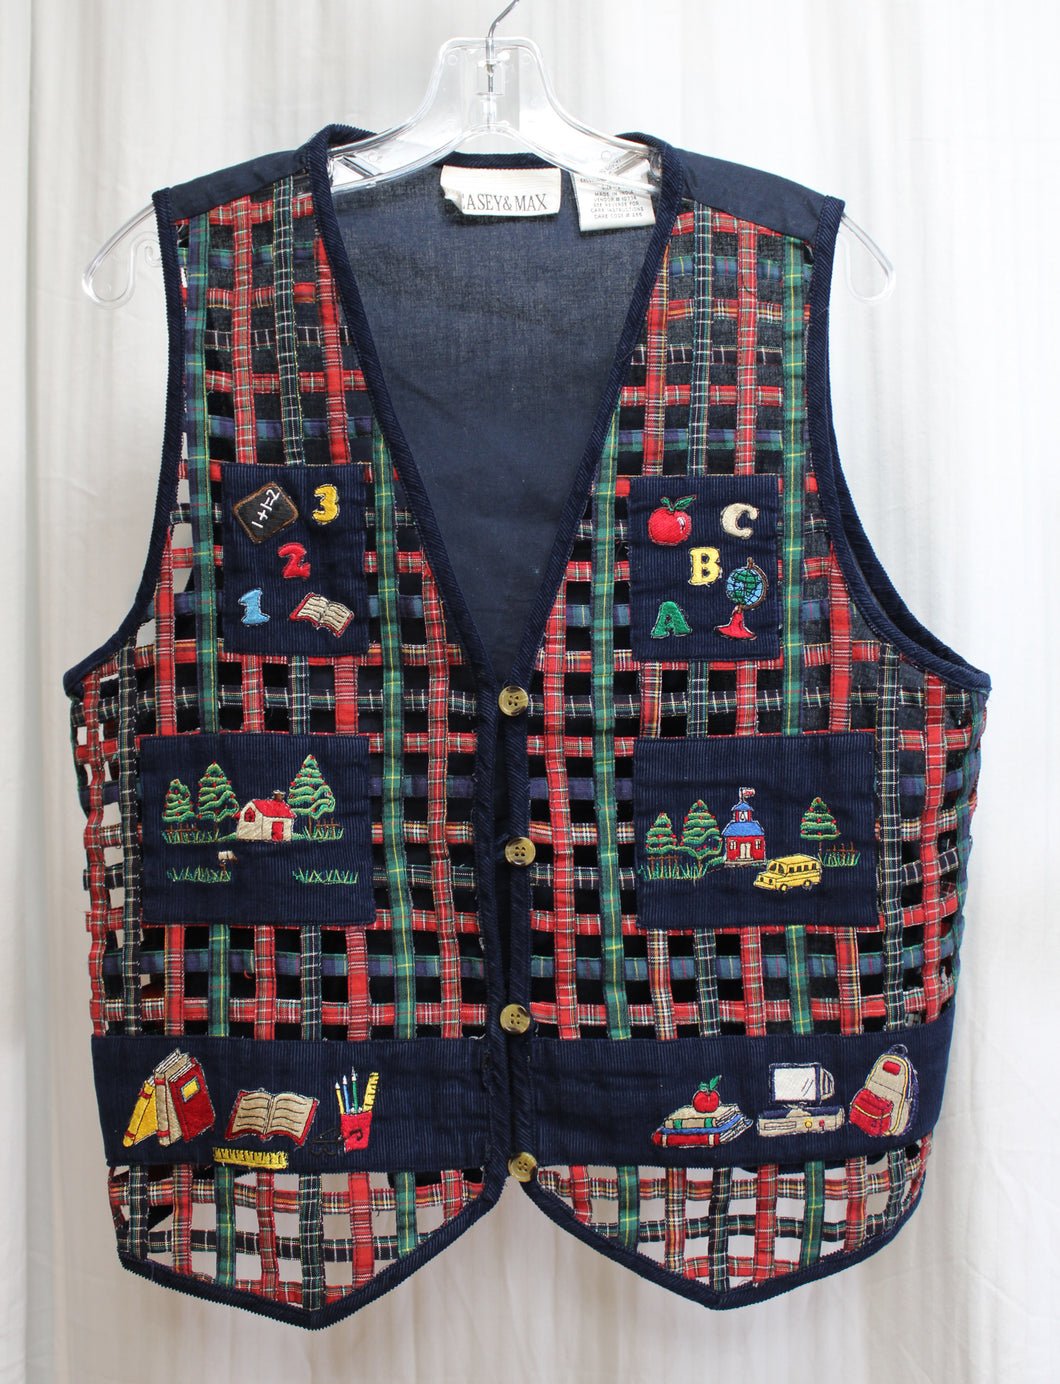 Vintage - Casey & Max - Adorable Open Weave Plaid  School/Teacher Themed w/ Applique & patchwork Vest - Size M (Vintage sizing)